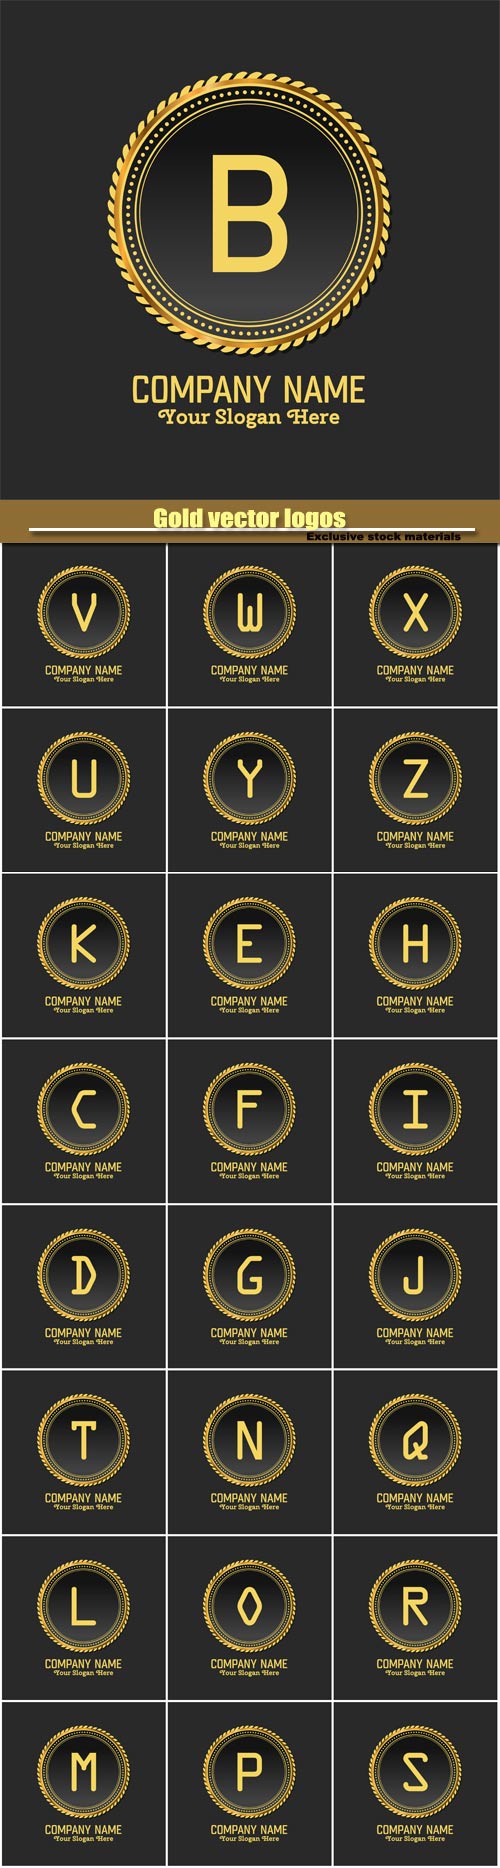 Gold vector logos